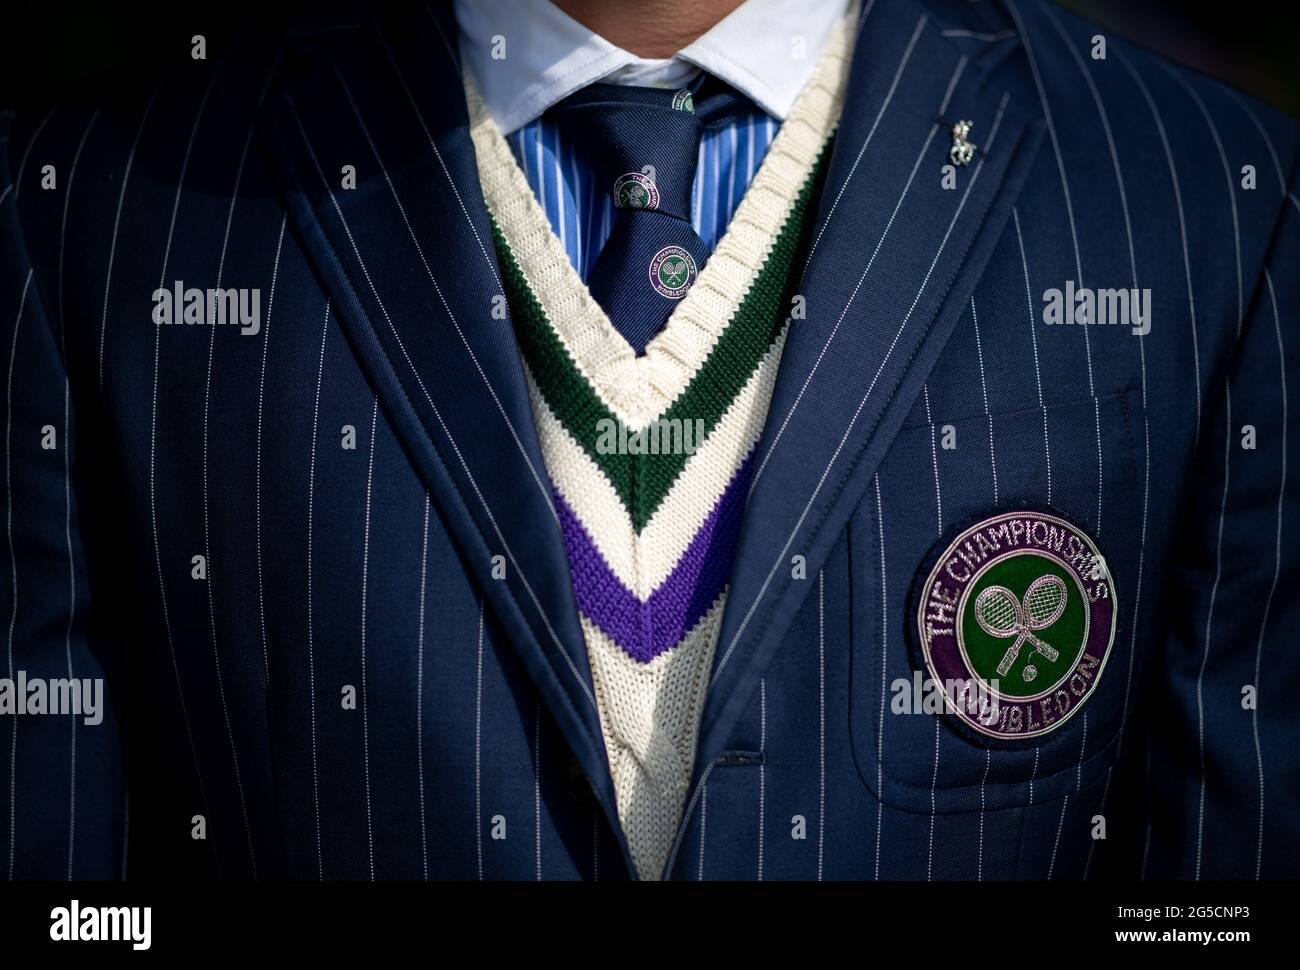 Detalle de la chaqueta de Wimbledon Umpire Richard Haigs, Jersey y corbata  en el All England Lawn Tennis and Croquet Club. Fecha de la foto: Sábado 26  de junio de 2021 Fotografía